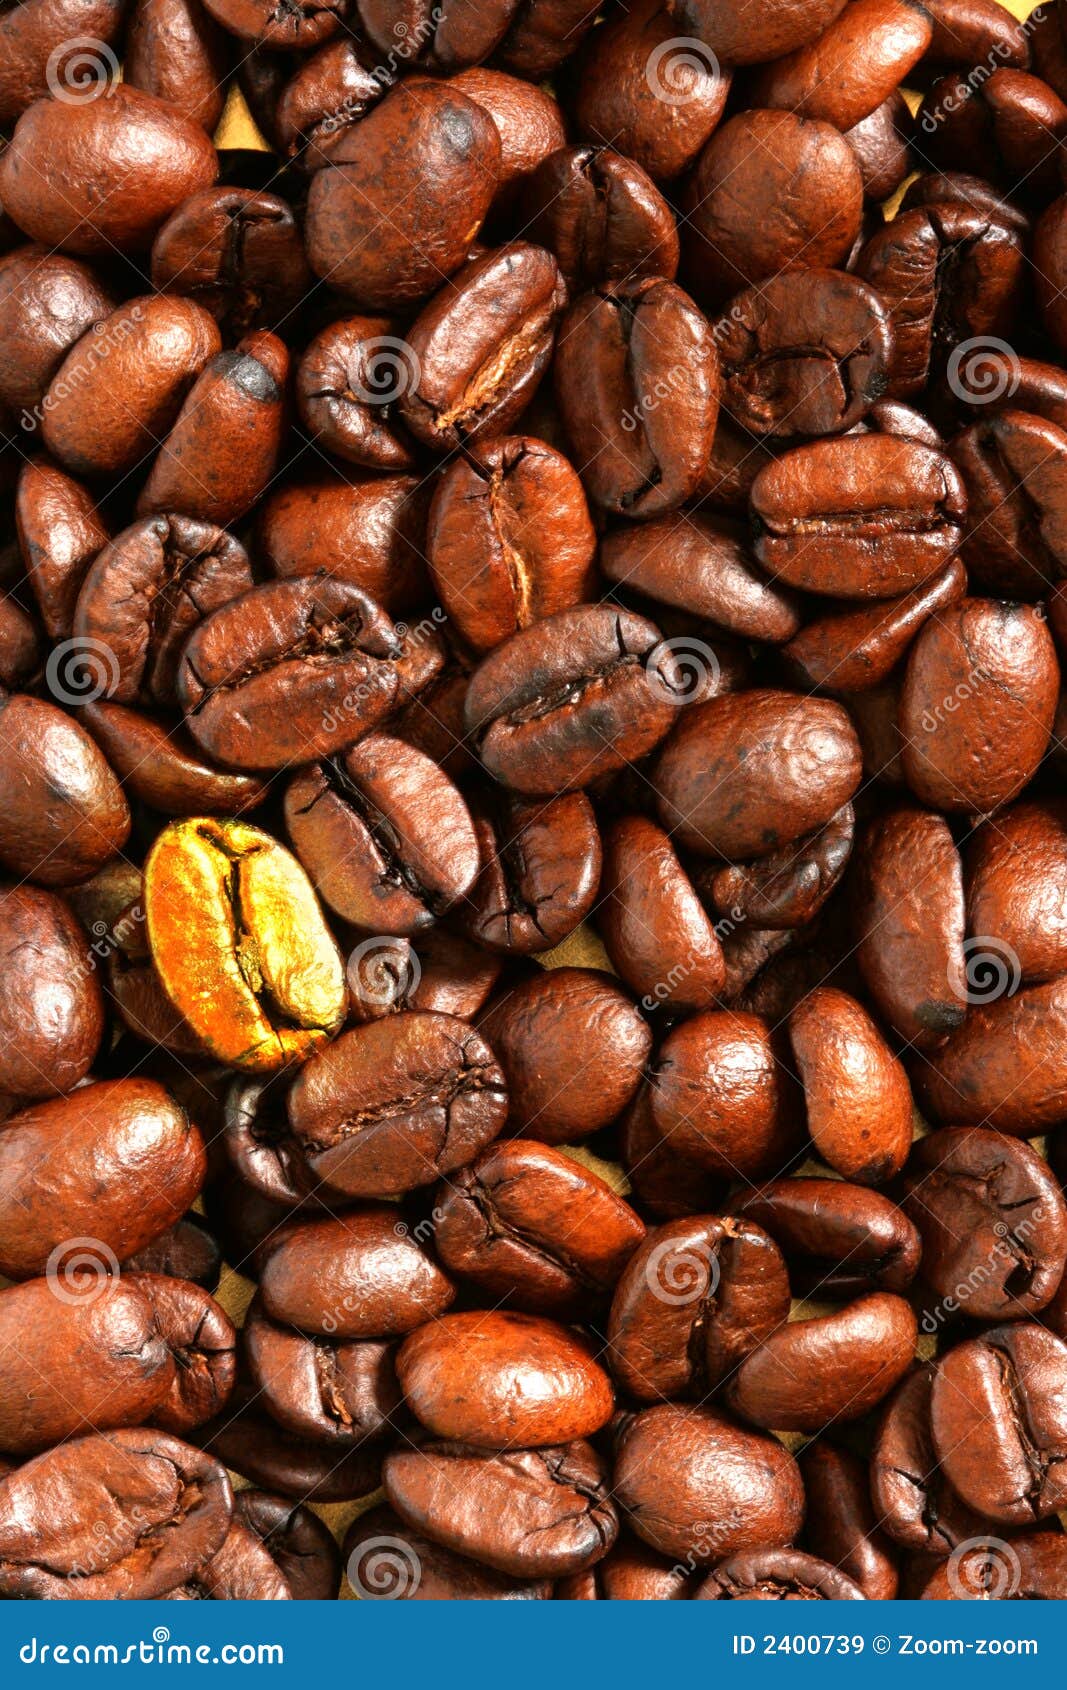 Golden coffee bean